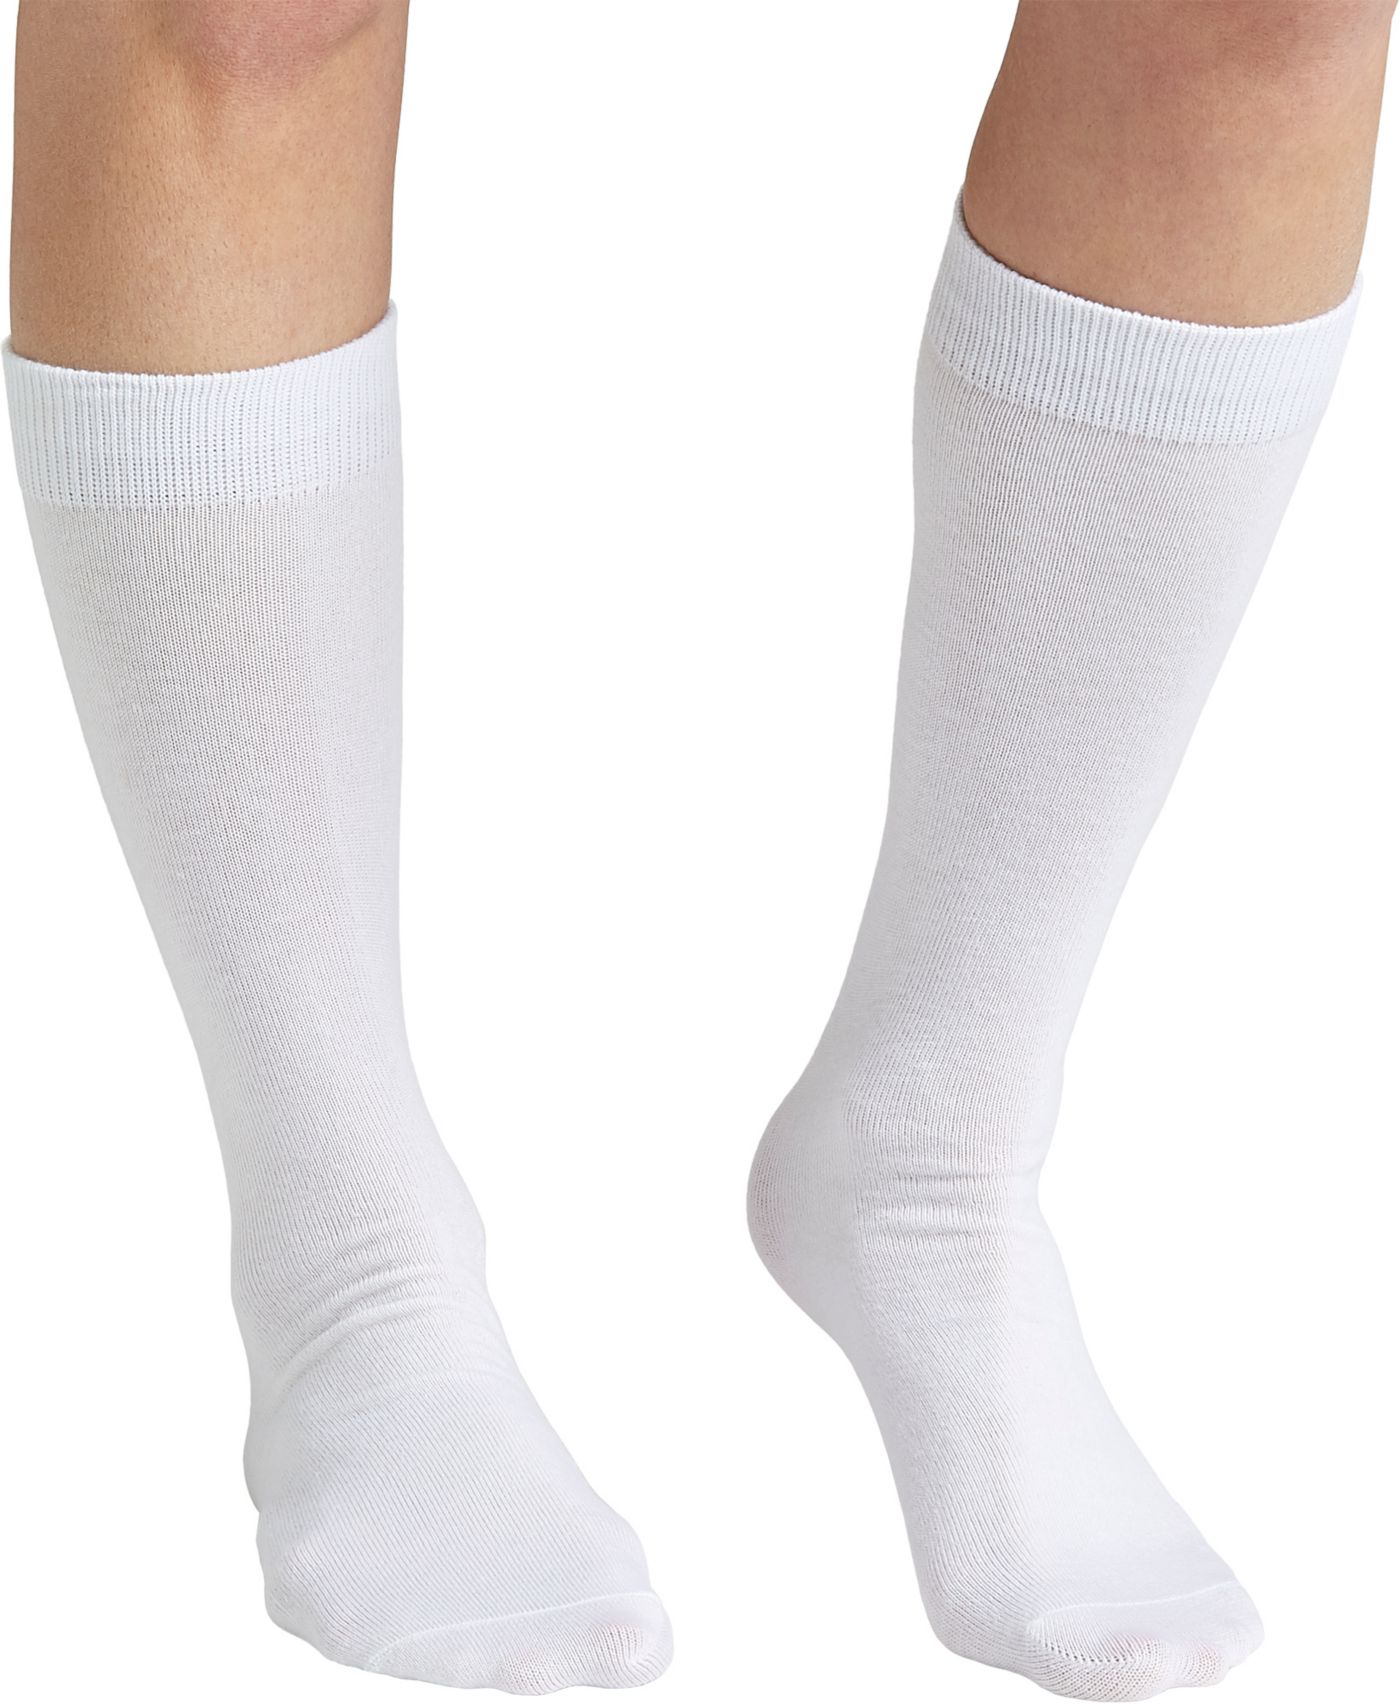 DSG Sanitary Baseball Socks - 2 Pack | DICK'S Sporting Goods